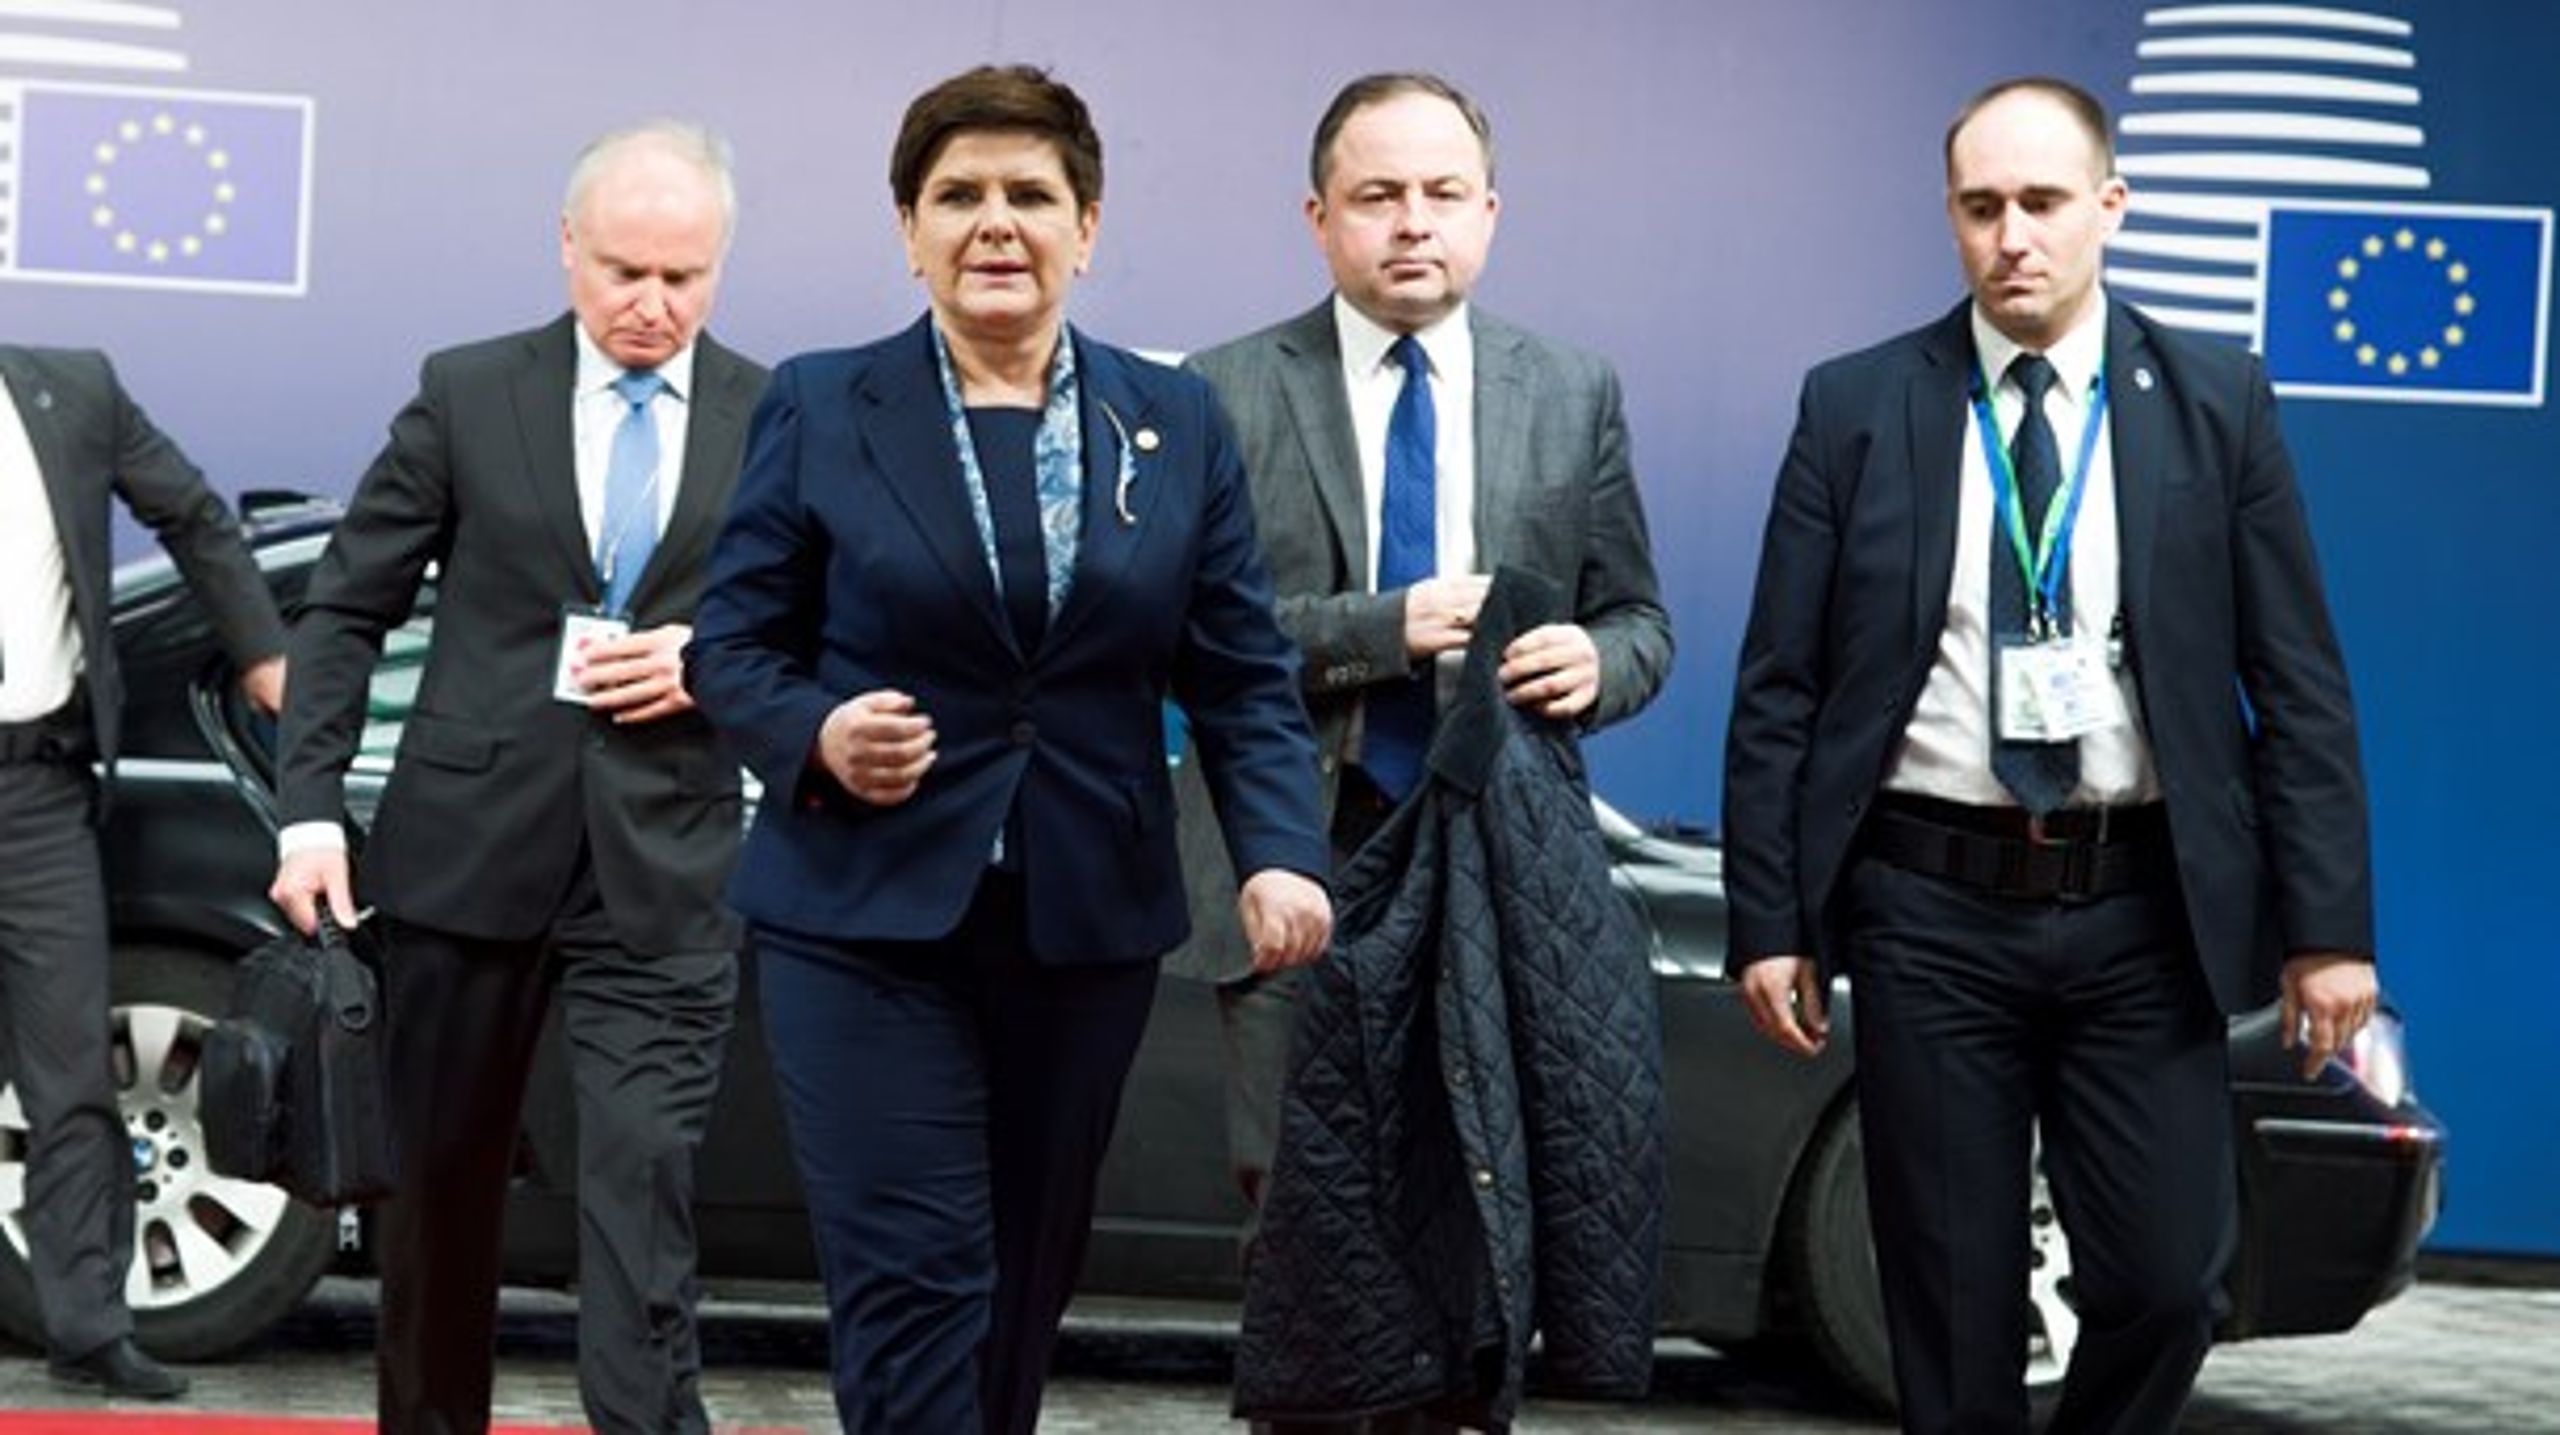 Den polske premierminister, Beata Szydlo, er rasende over valget af en hjemlig politisk ærkefjende til et EU-topjob.